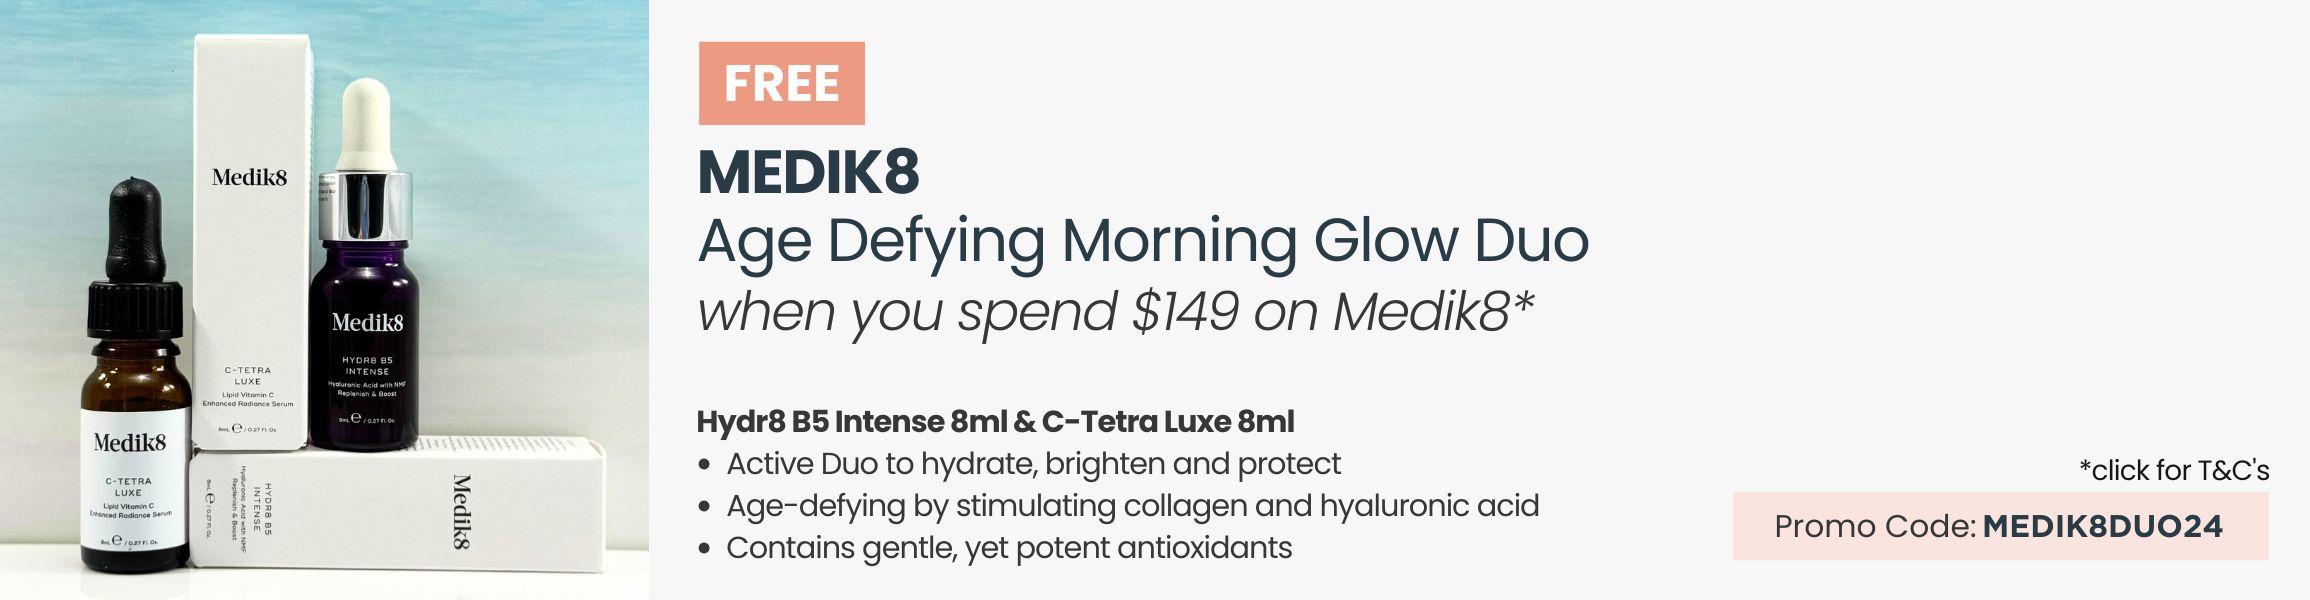 Free Medik8 Age Defying Morning Glow Duo. Min spend $149 on Medi8. Promo code MEDIK8DUO24.